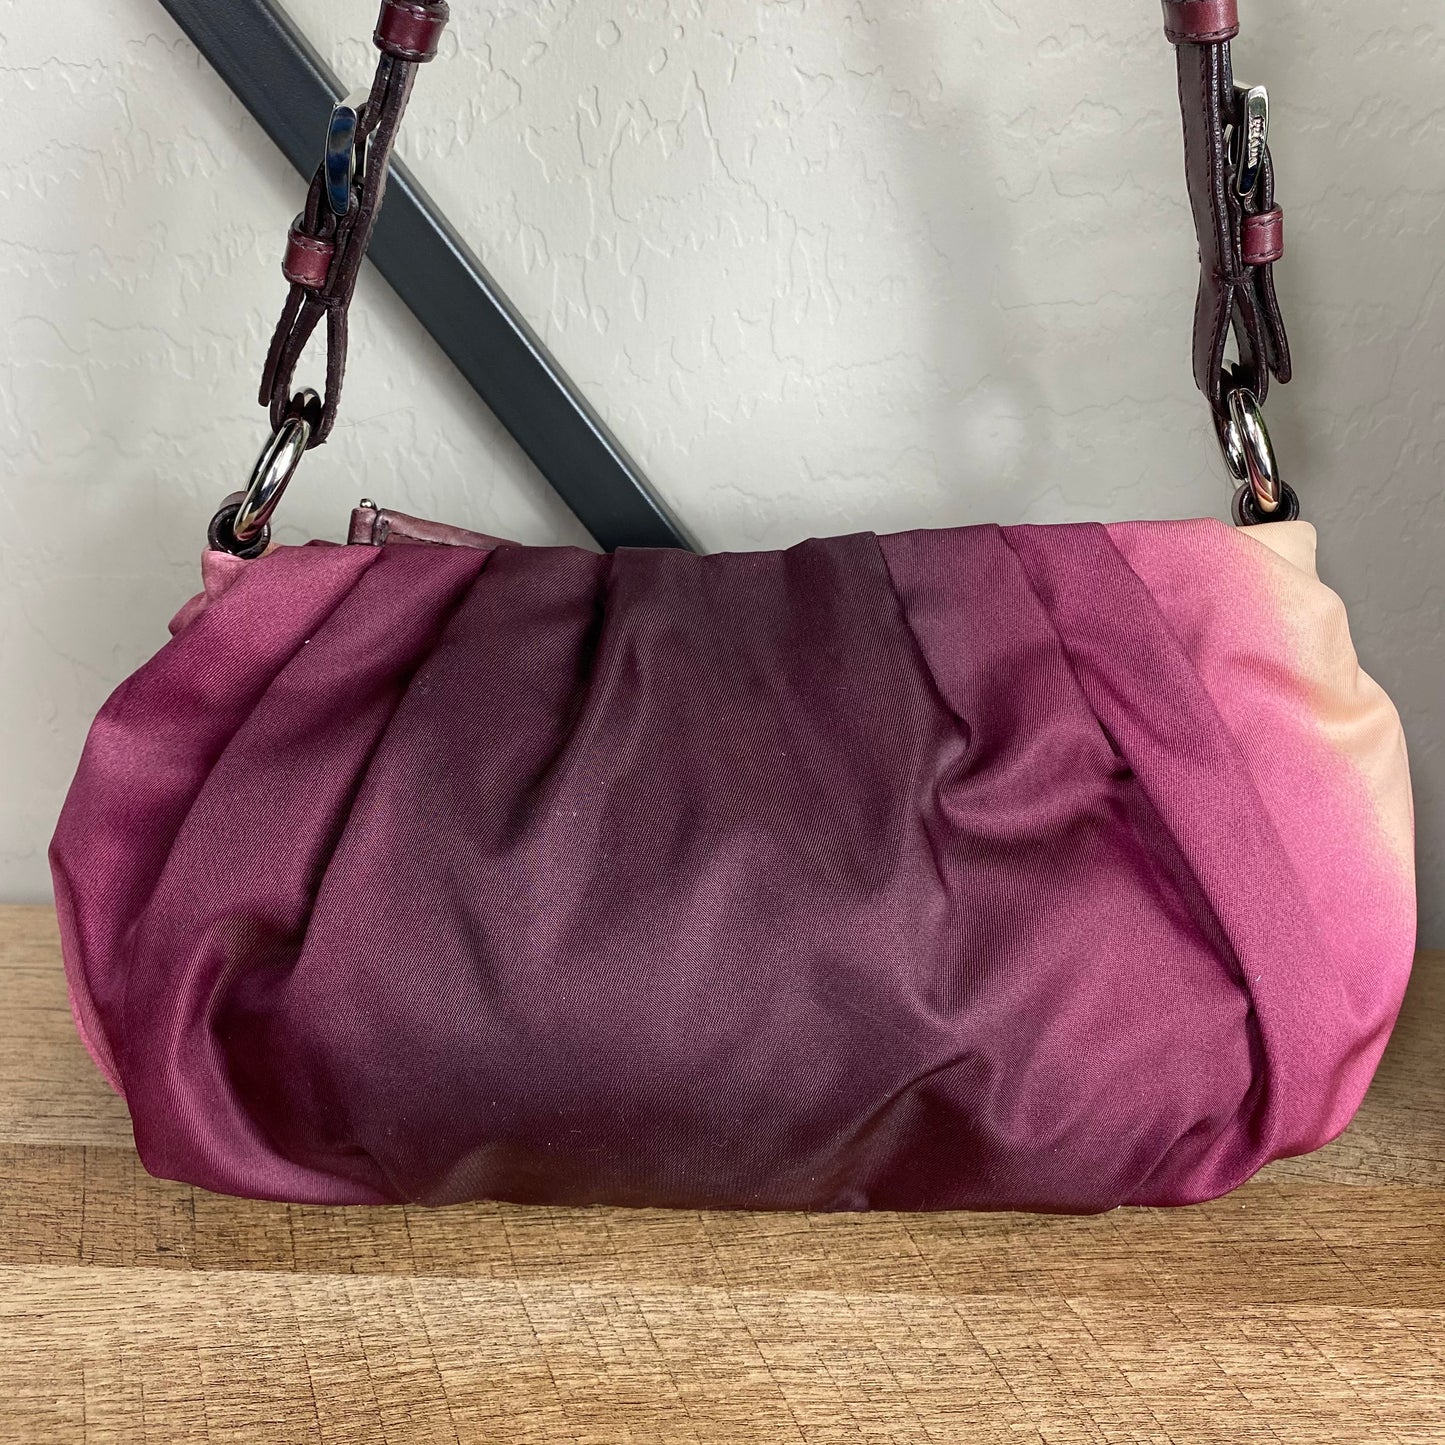 Prada Nylon Ombre Handbag